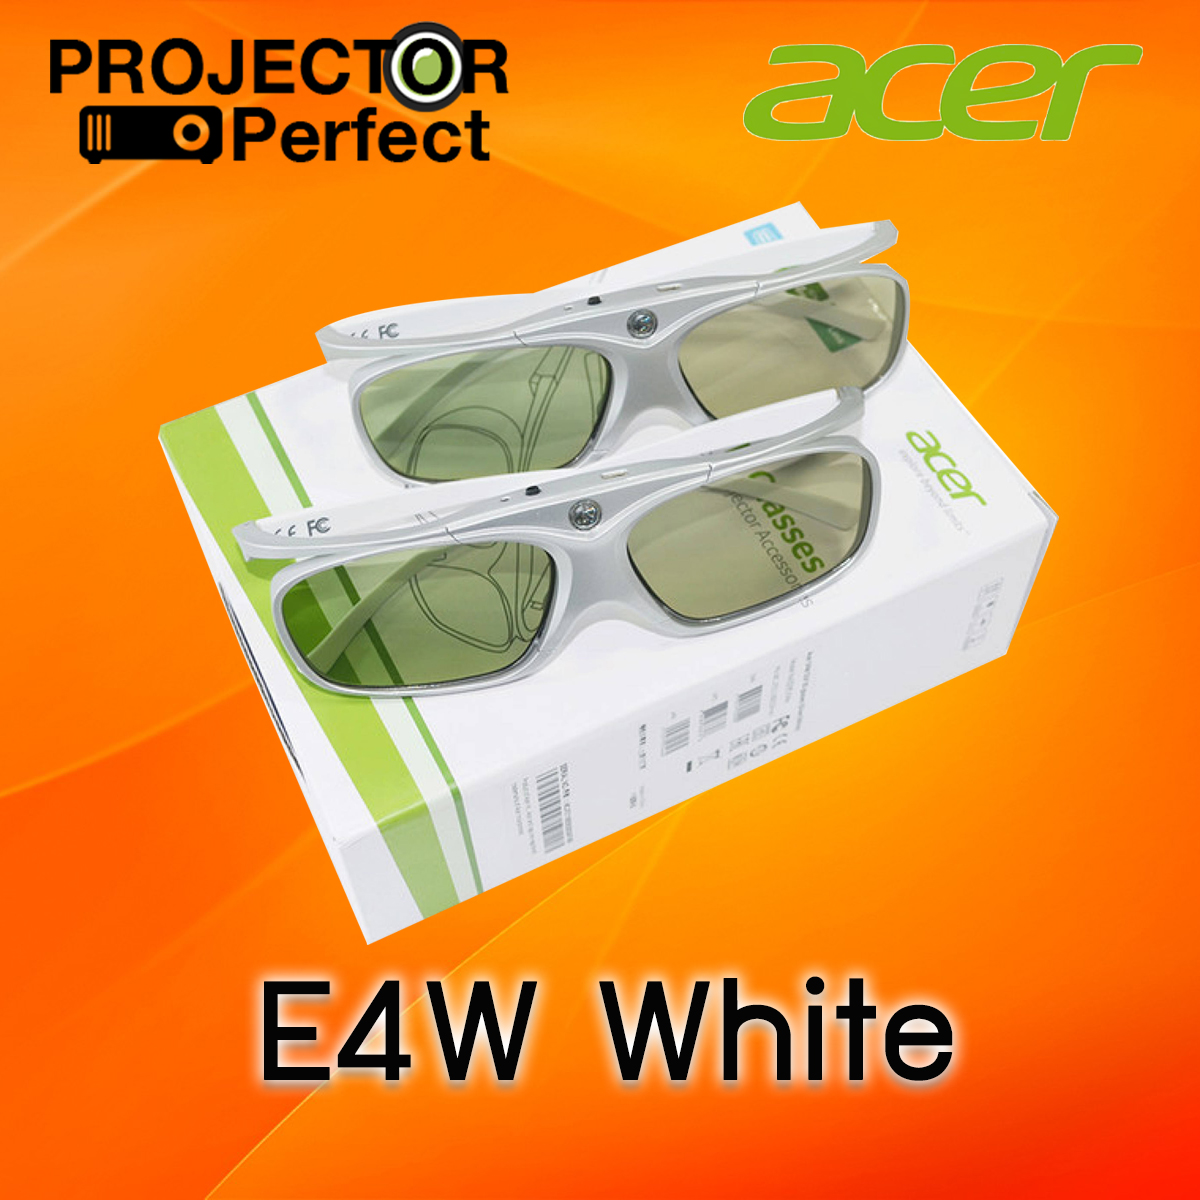 แว่น 3 มิติ ACER 3D Glasses E4w White แพ็คคู่ รับประกันคุณภาพสินค้า ของแท้ 100% ถูกที่สุด แข็งแรง ทนทาน ฟรีค่าจัดส่ง